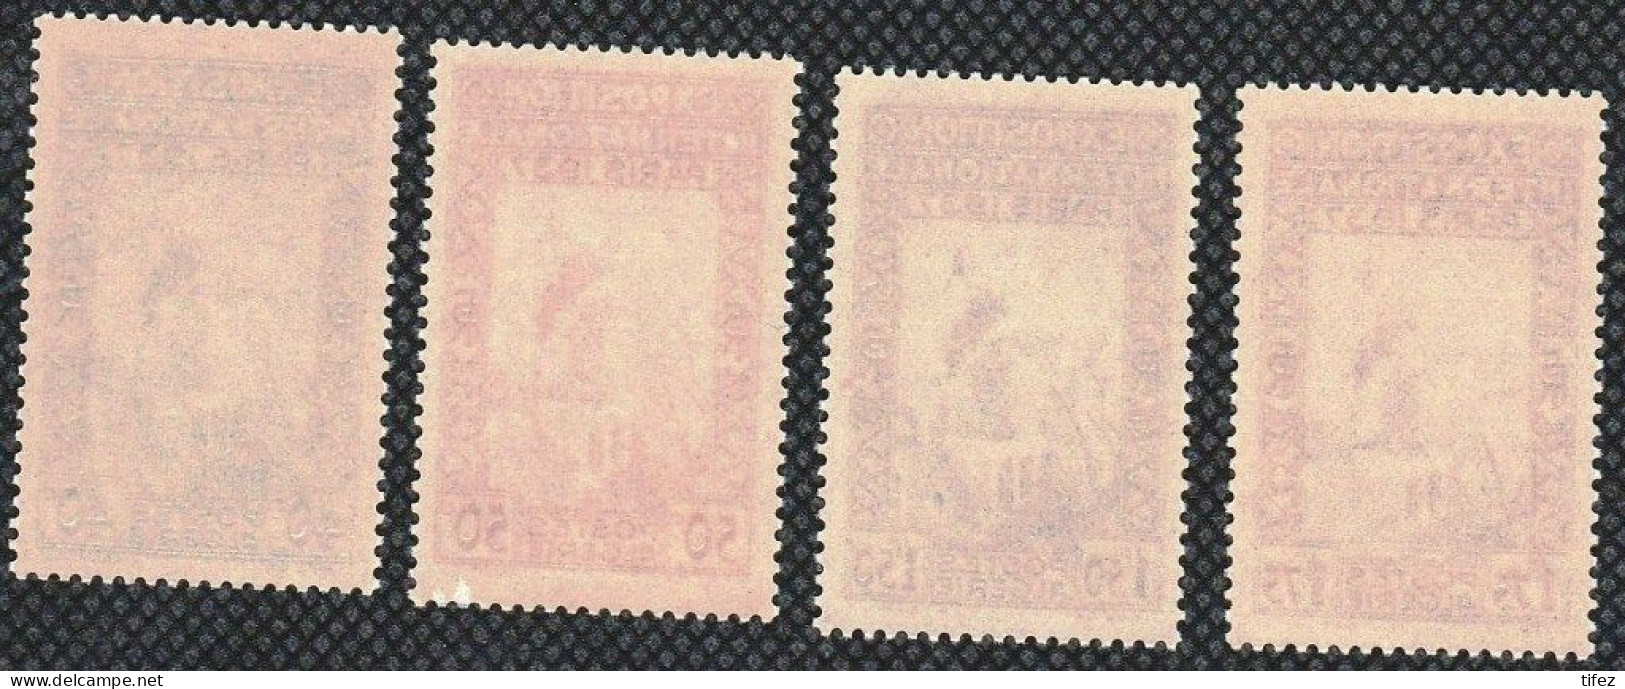 Année 1937-N°127/130 Neufs**MNH : Expo Internationale De Paris - Série Complète - Unused Stamps